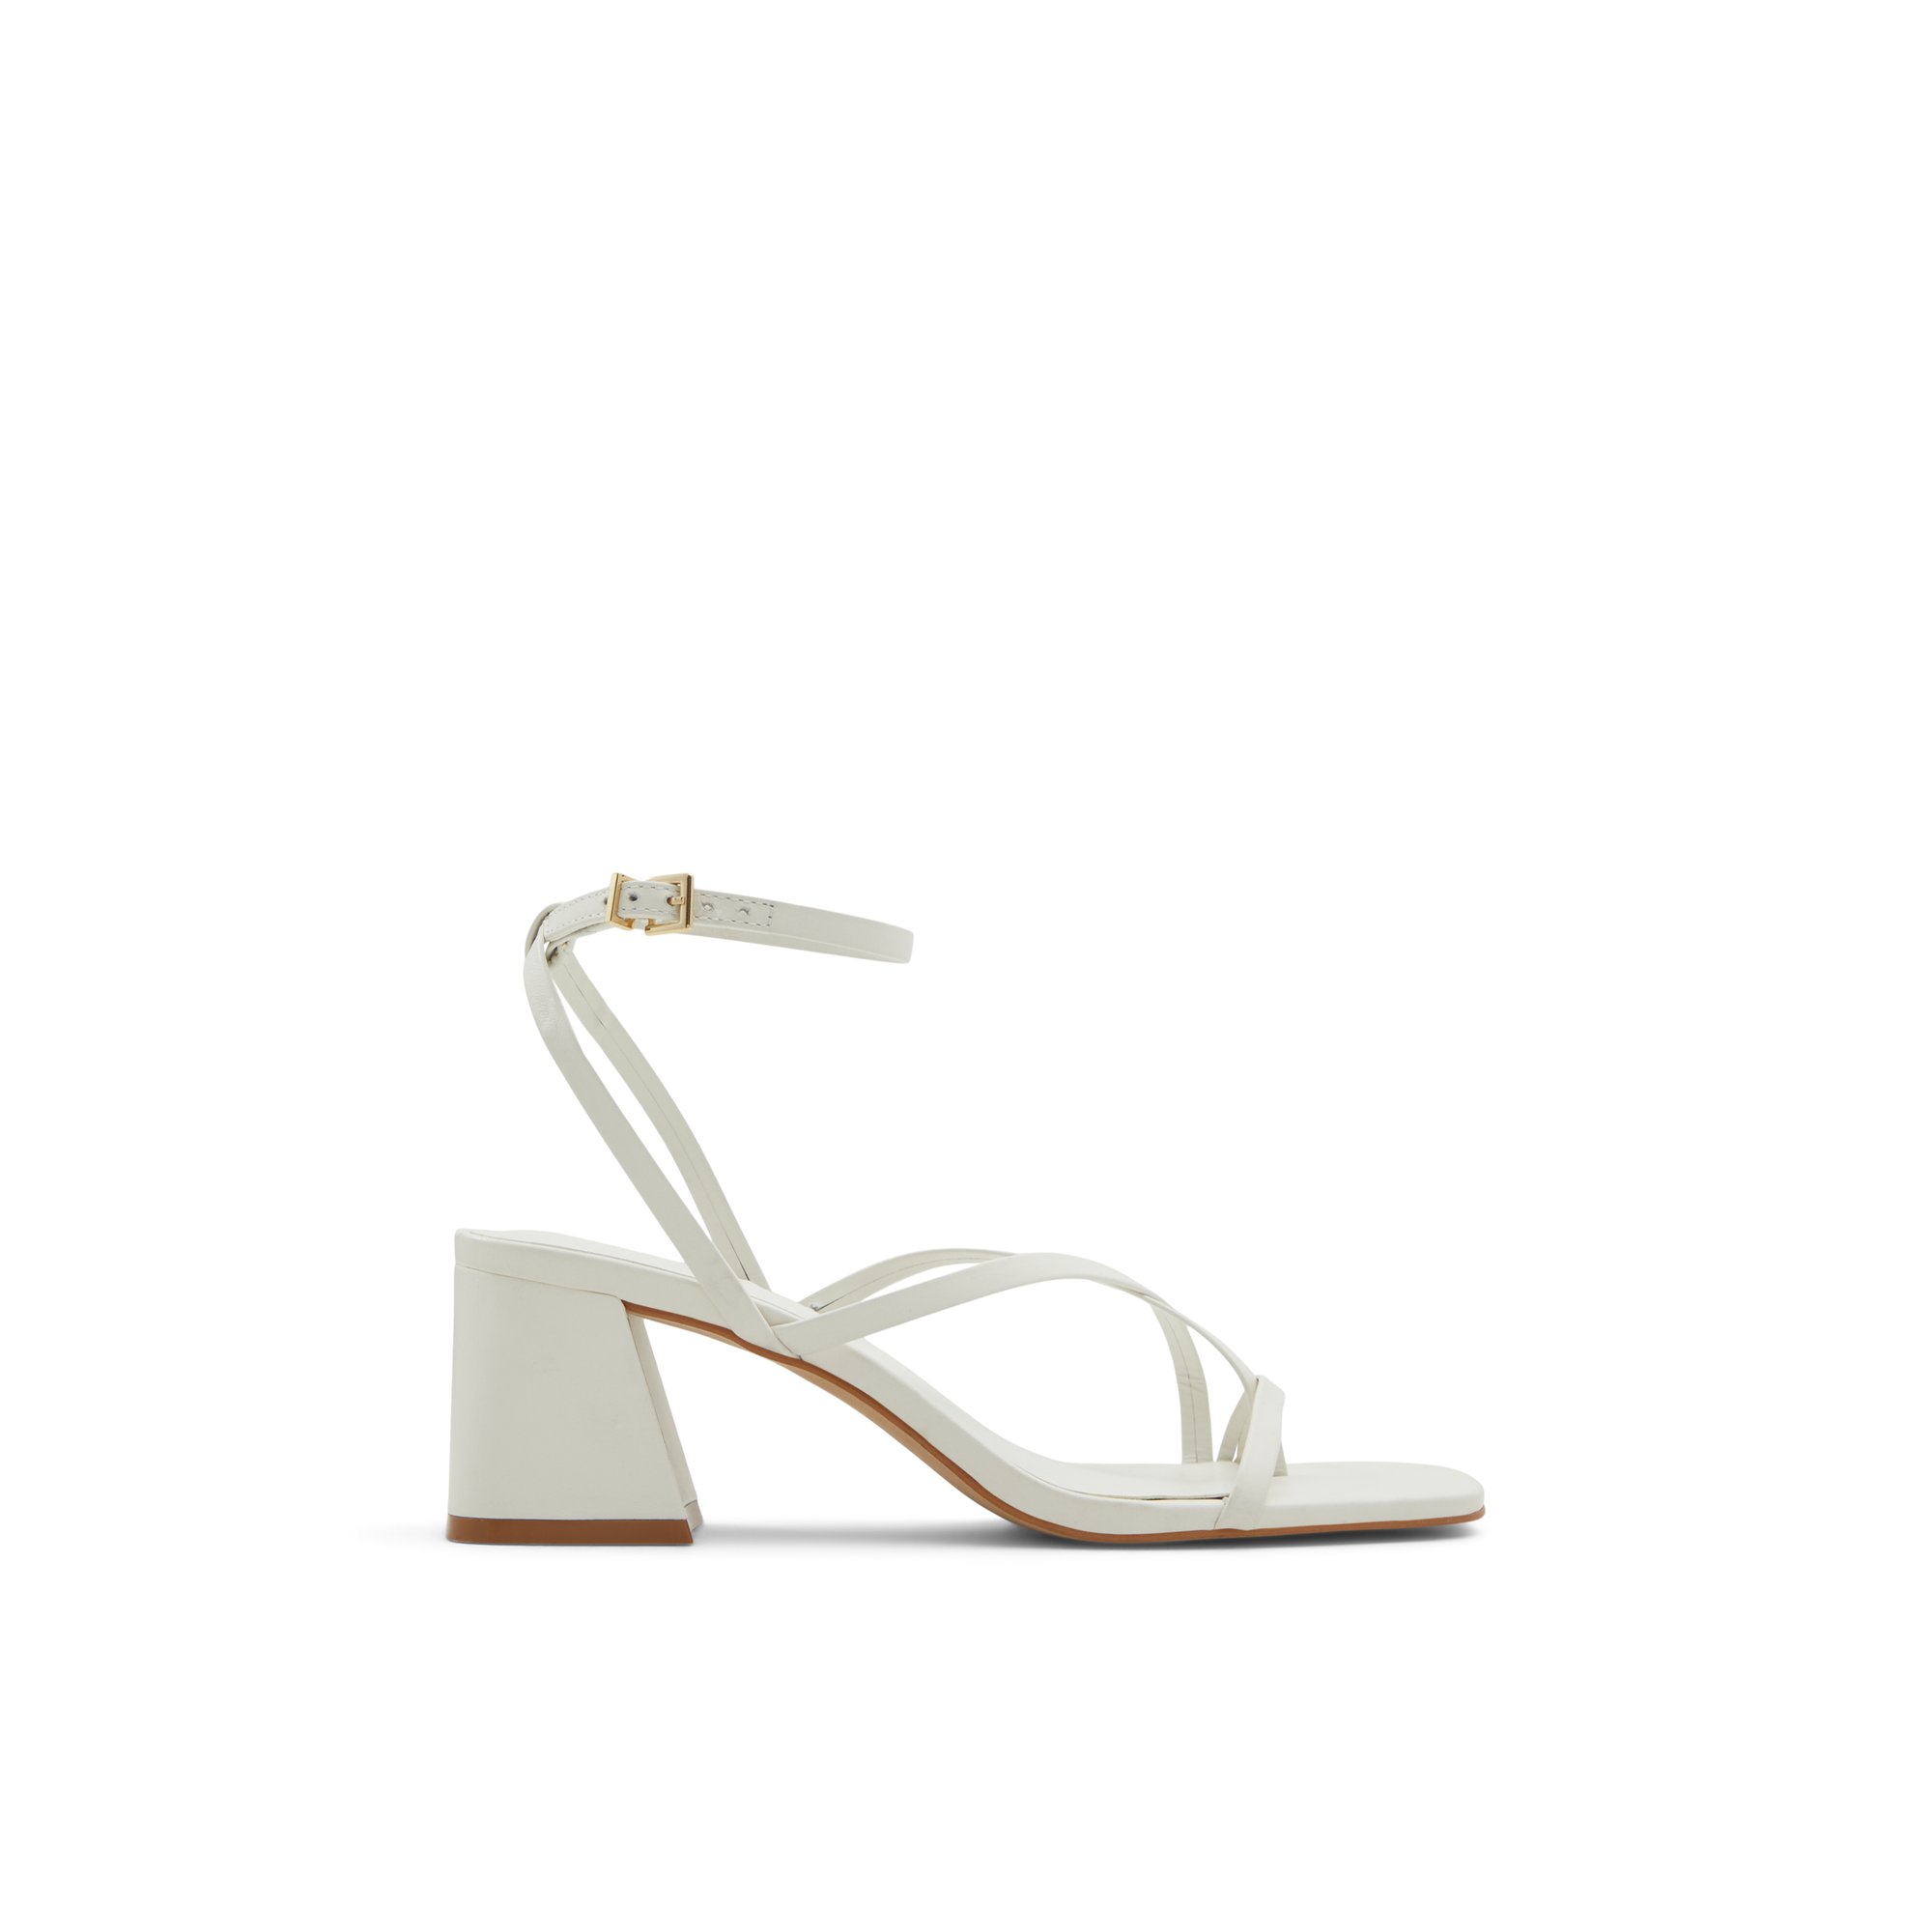 ALDO Adrauder - Women's Sandals Strappy - White